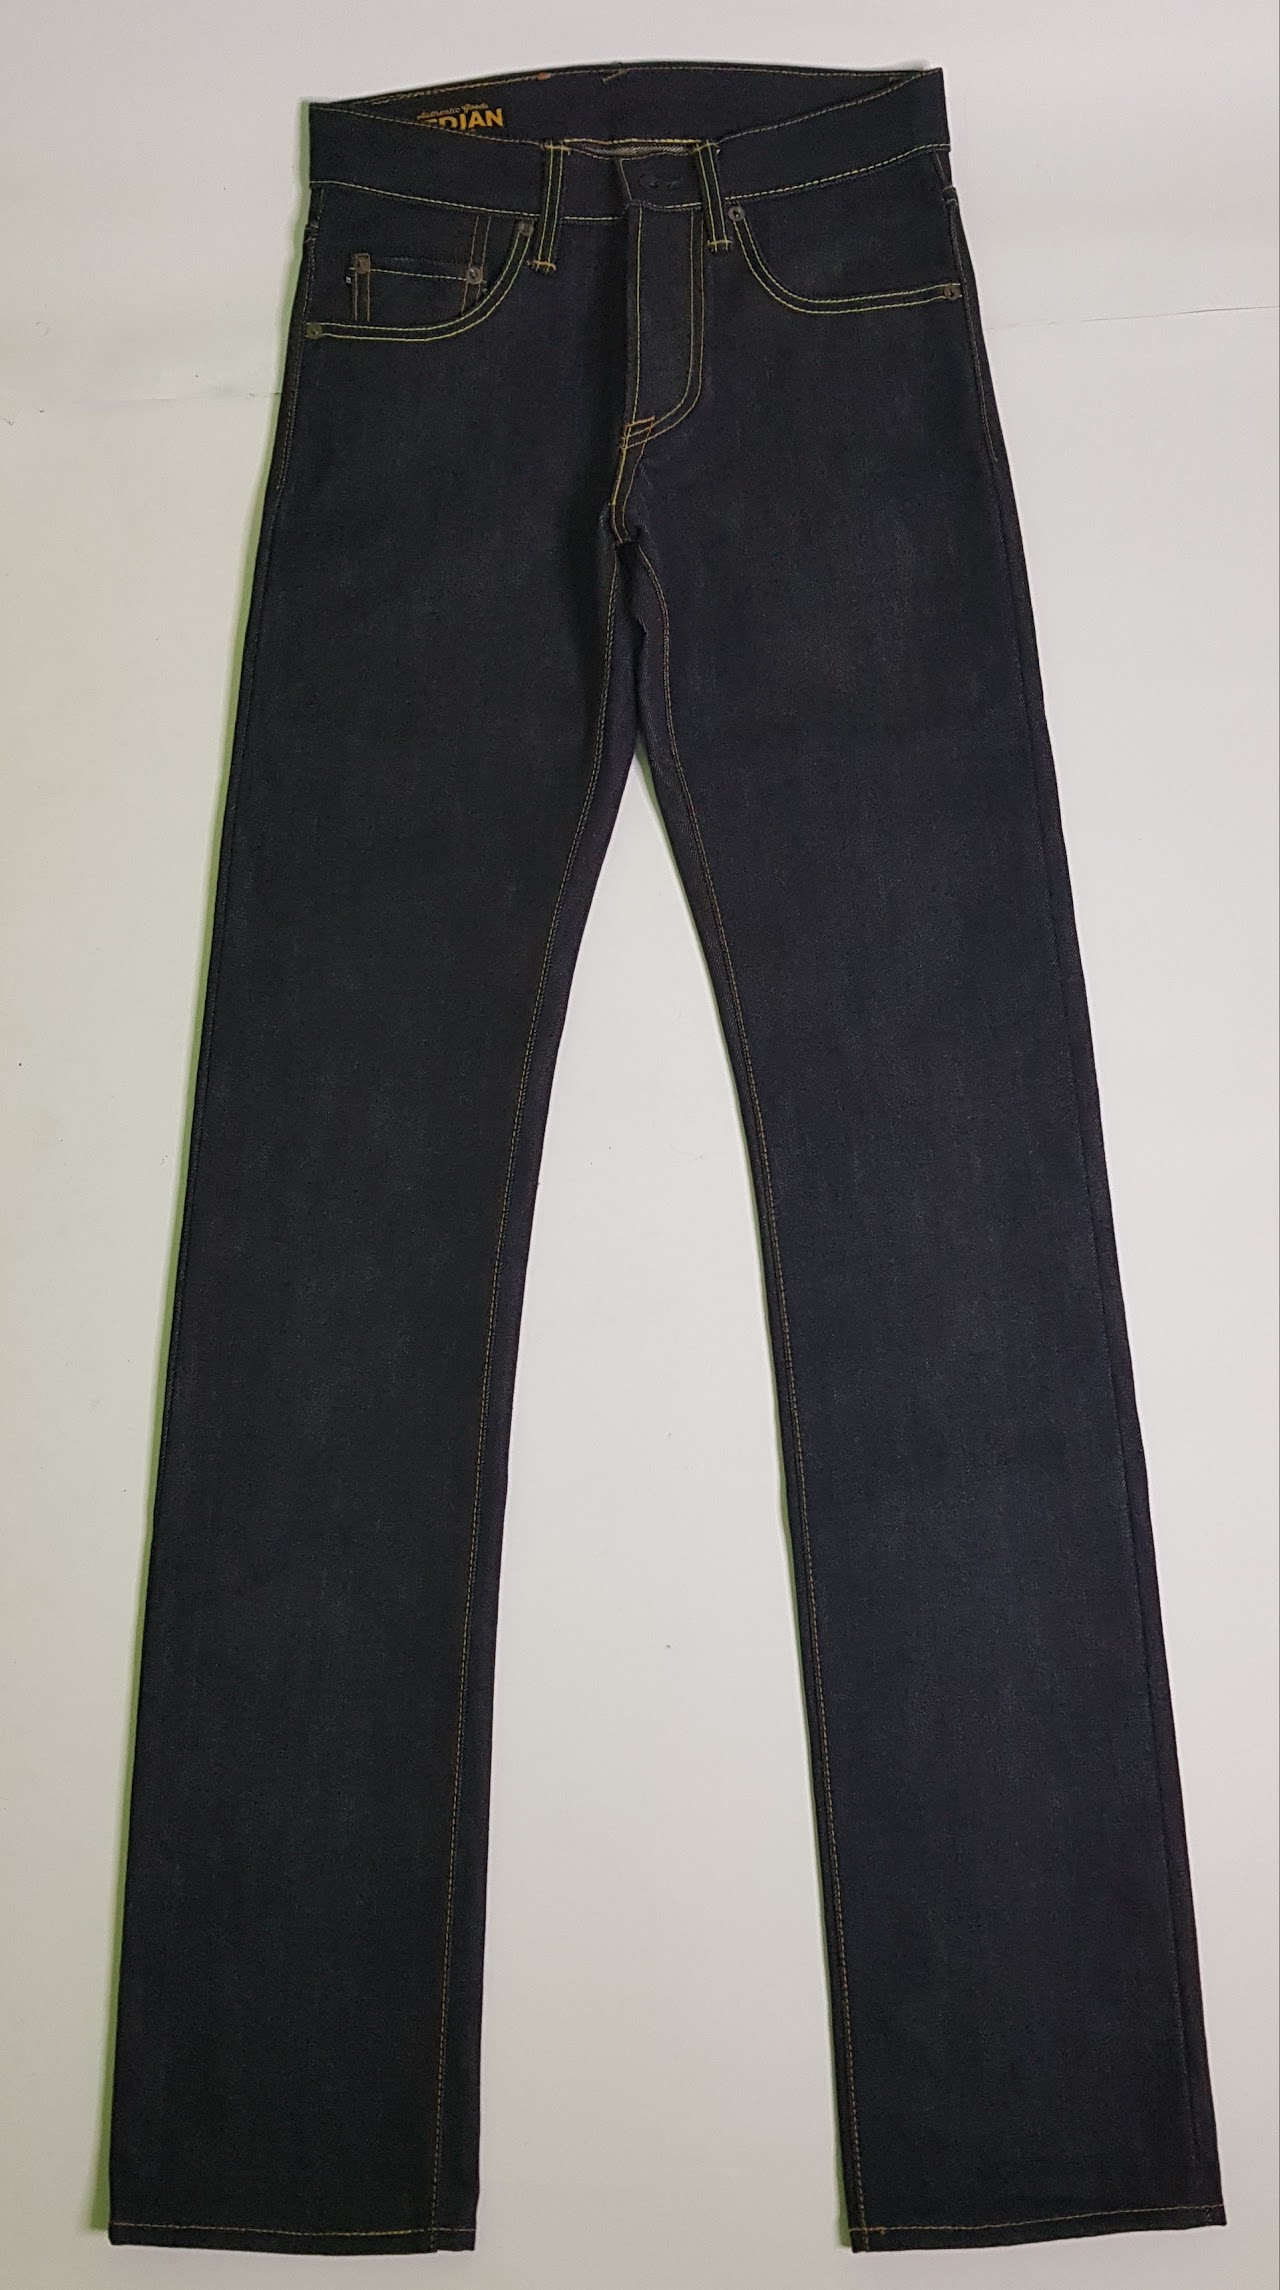 Nedjan Company N-001-XS Raw Denimm Jeans